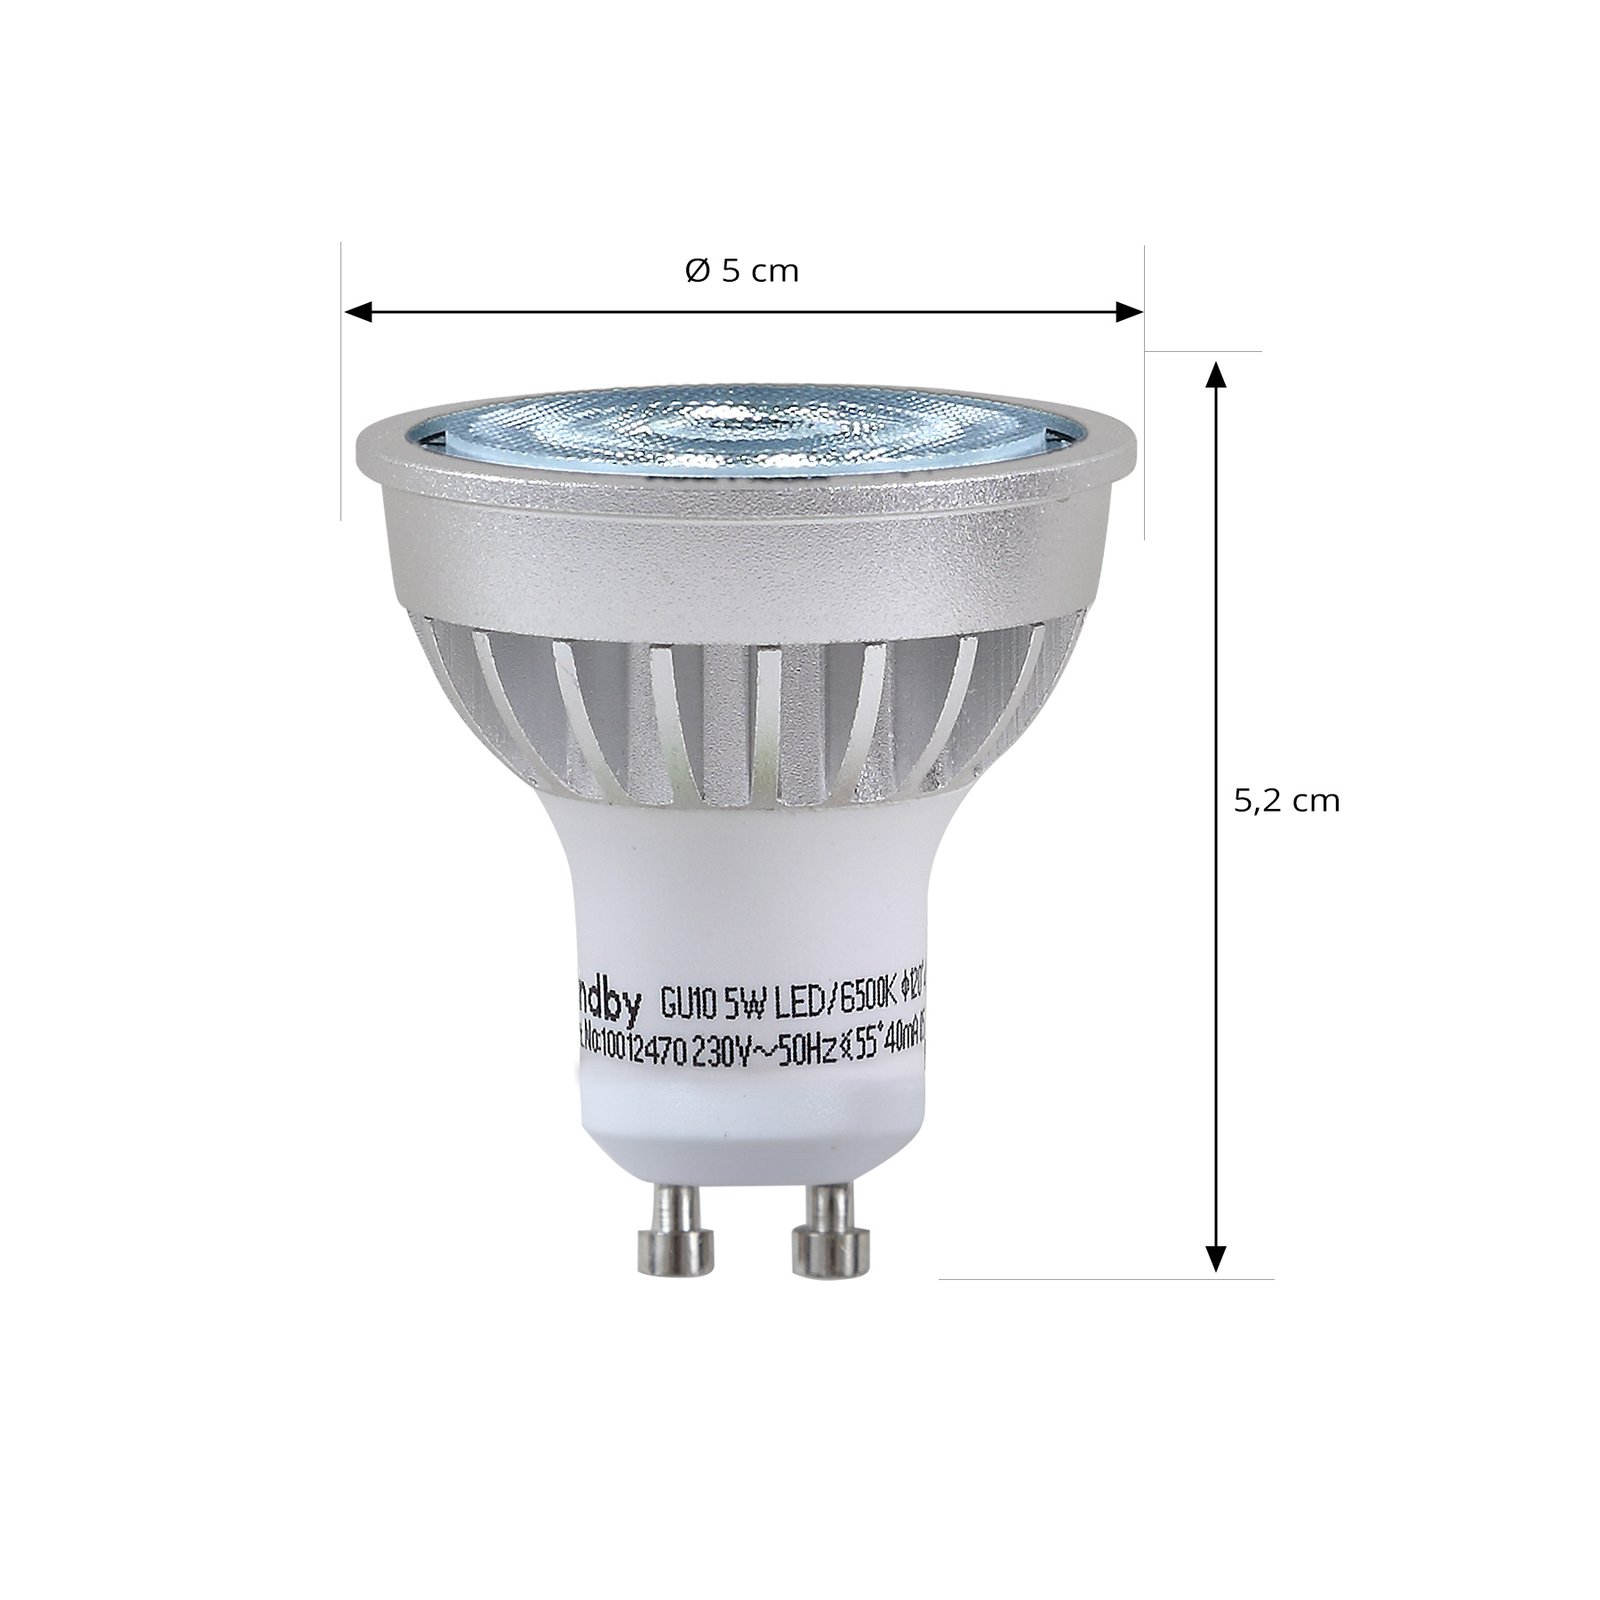 Lindby LED-Reflektor, GU10, 5 W, opal, 6.500 K, 55°